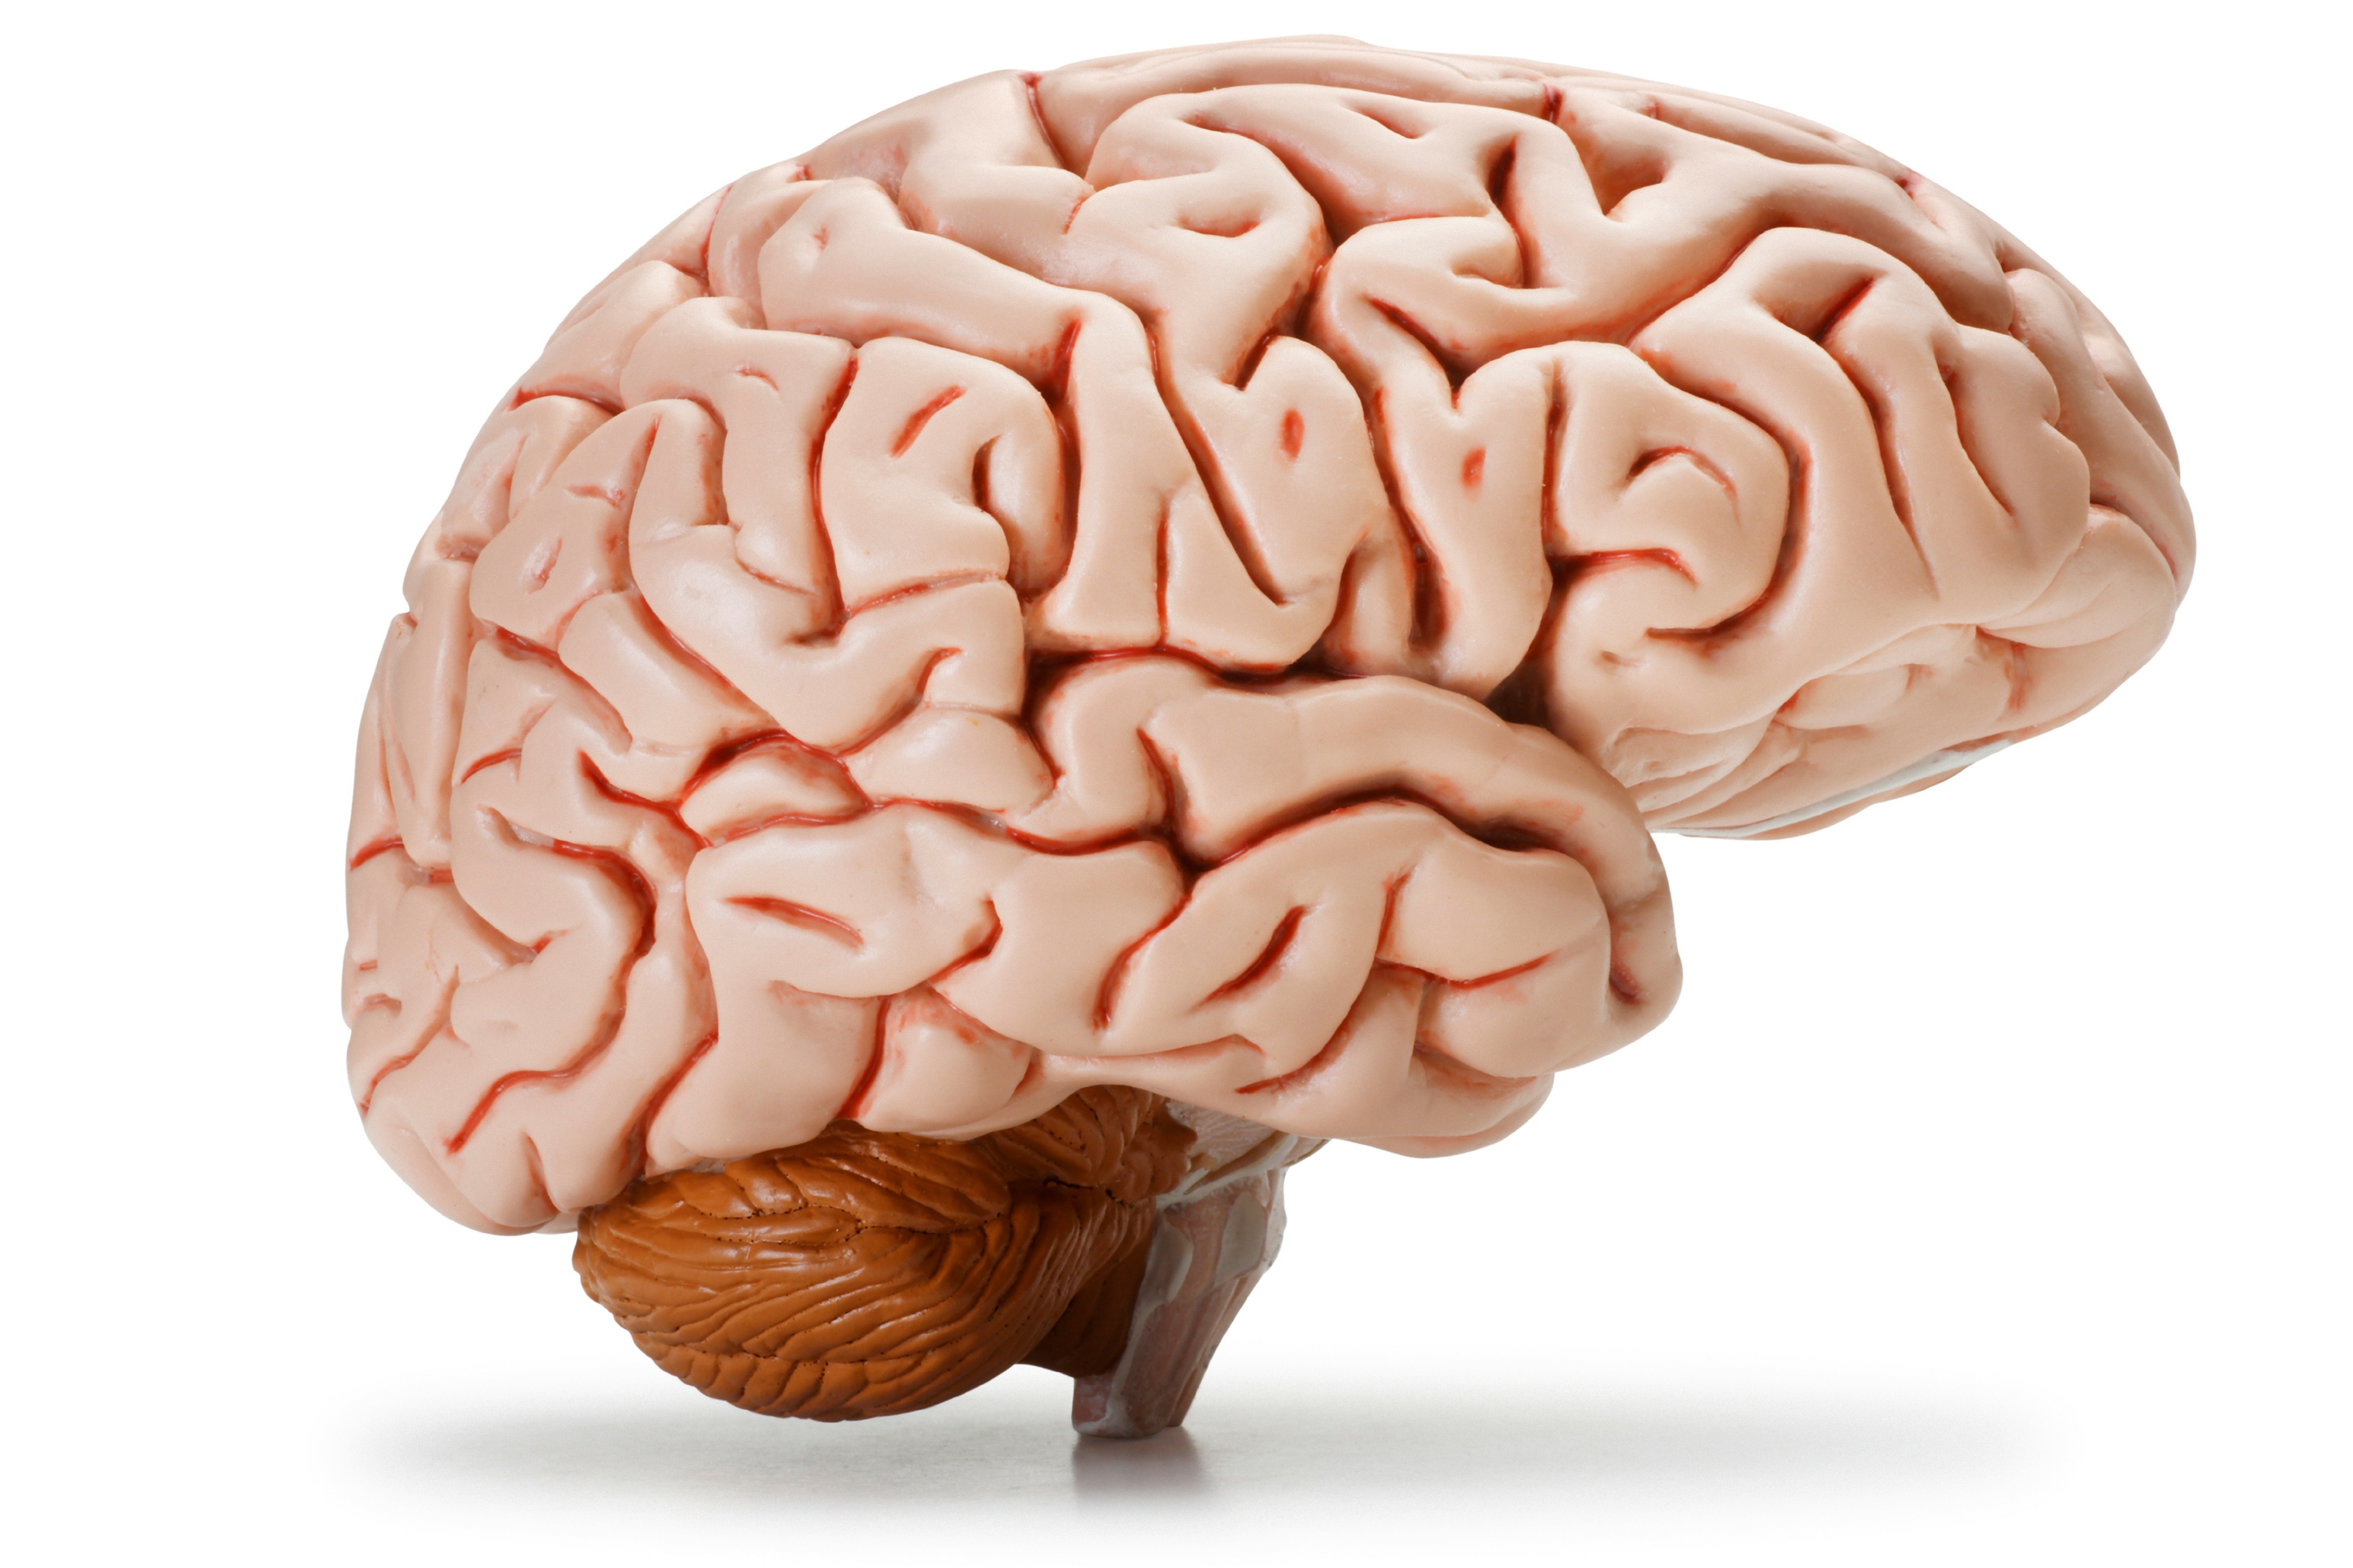 Brain imaging. Изображение мозга человека.